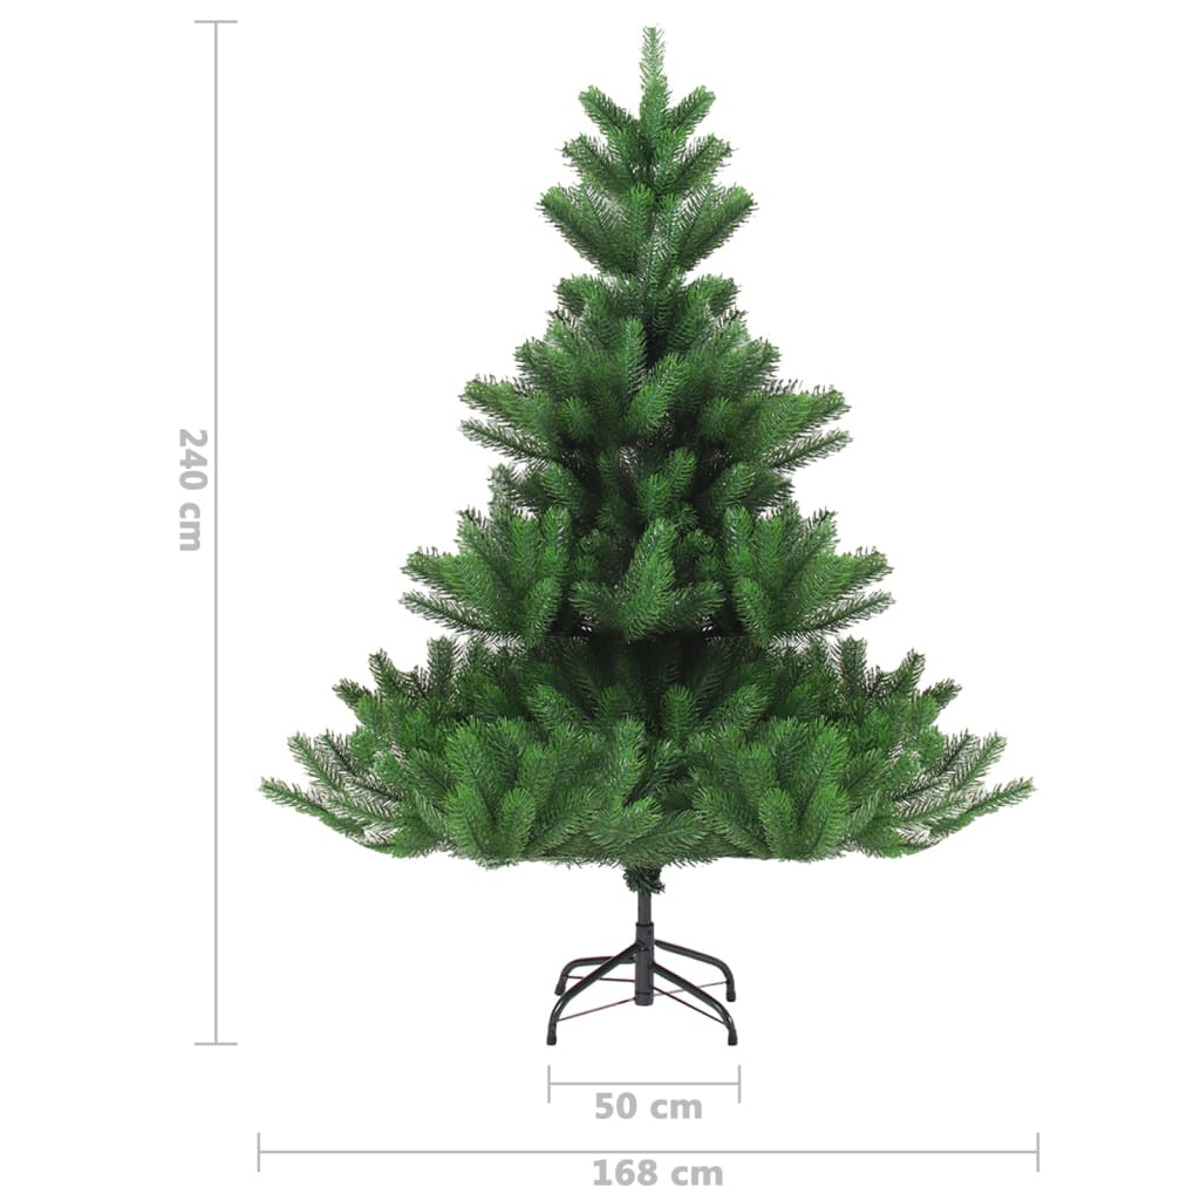 VIDAXL 3077734 Weihnachtsbaum